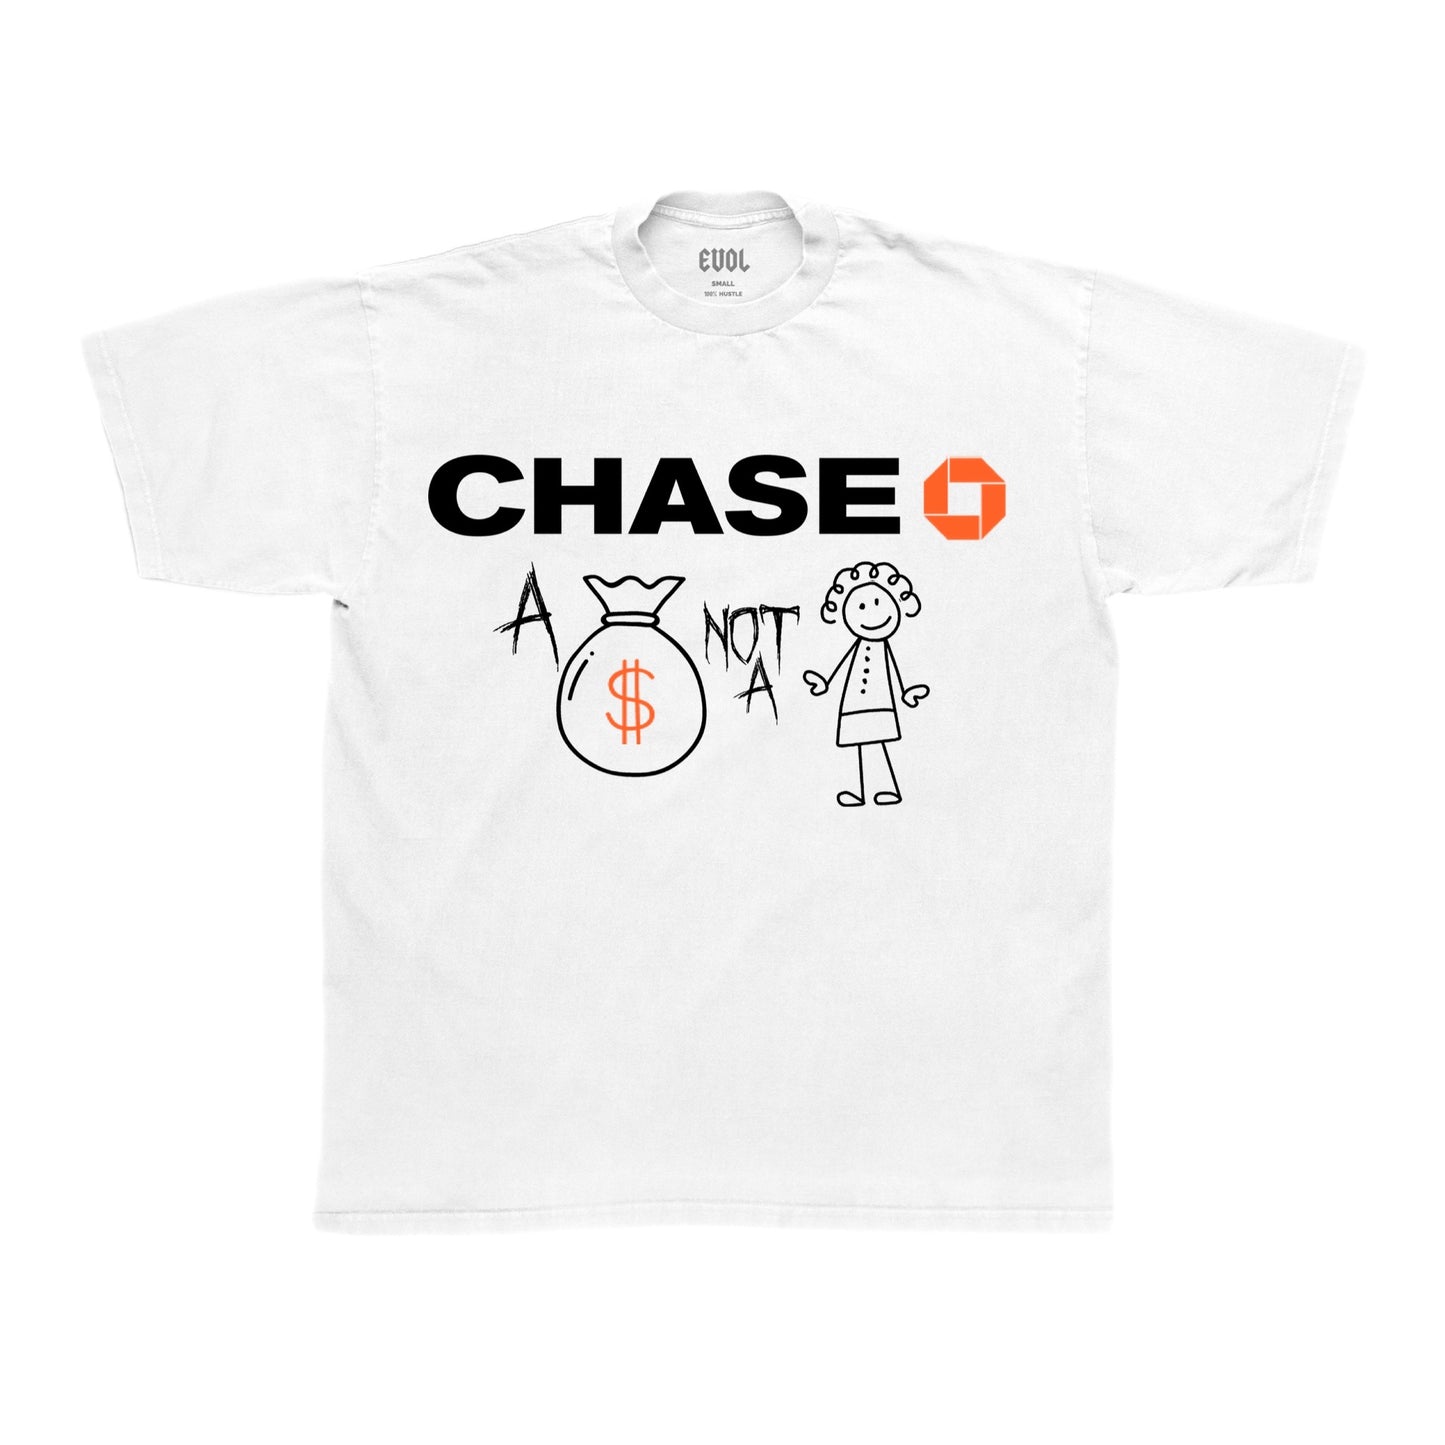 EVOL Chase Tee White/Orange